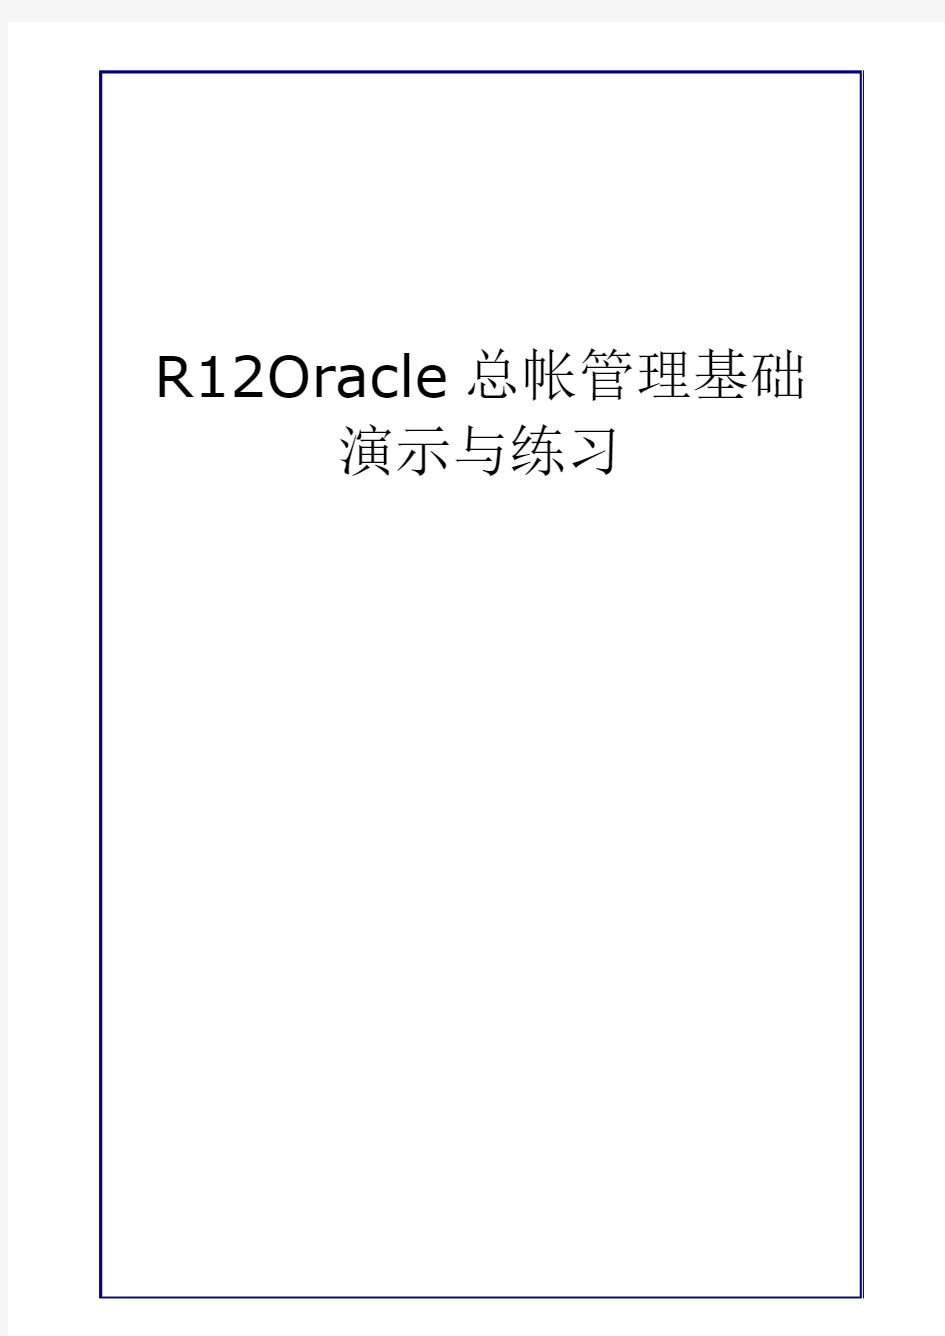 R12 Oracle总帐管理基础-演示与练习